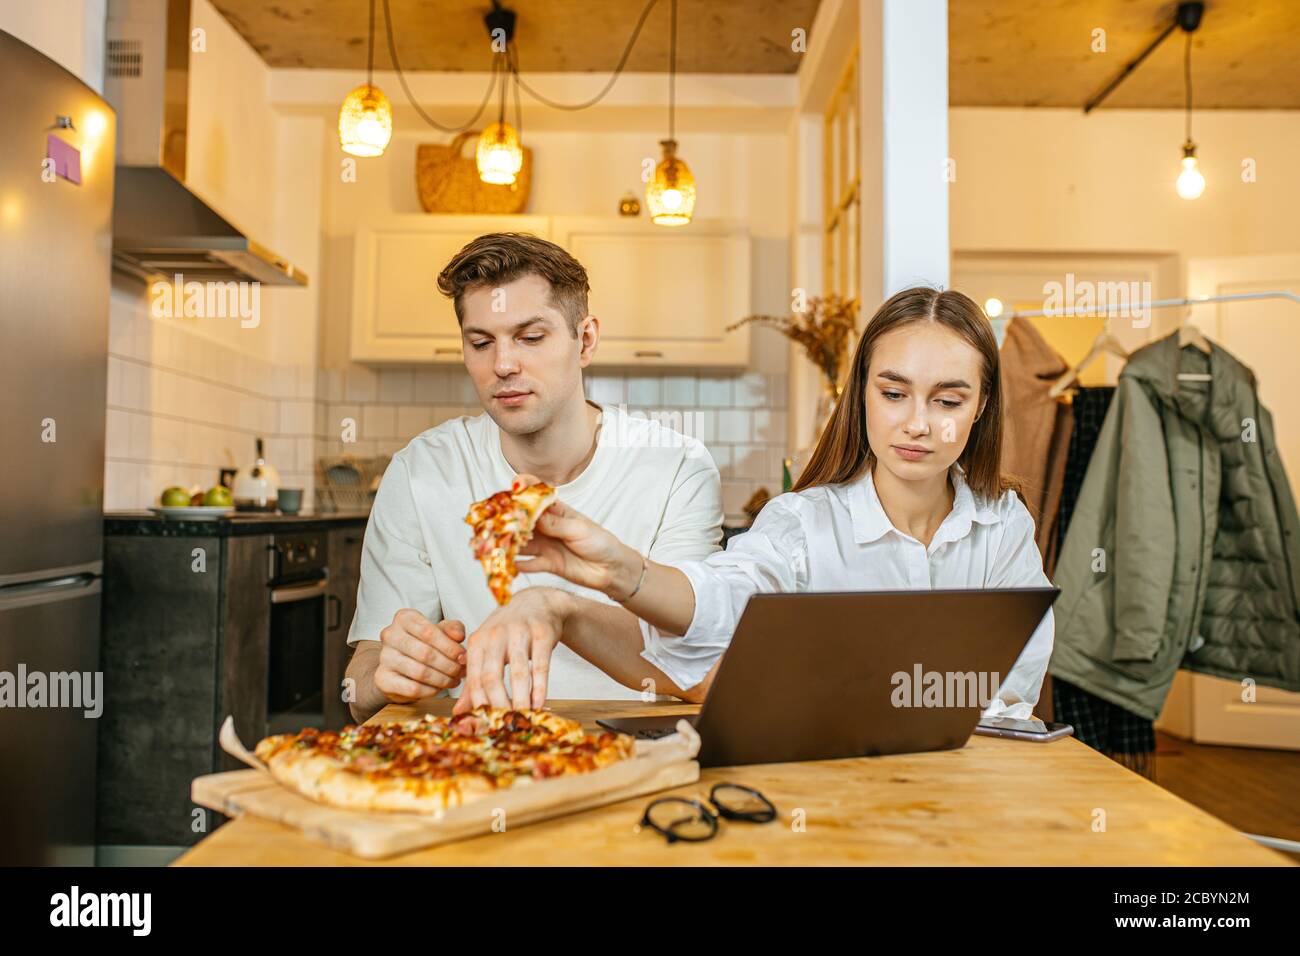 temps libre, temps libre de couples mariés caucasiens à la maison, homme et femme aiment manger la pizza reçue par le service de livraison, ils regardent le film dans ordinateur portable Banque D'Images